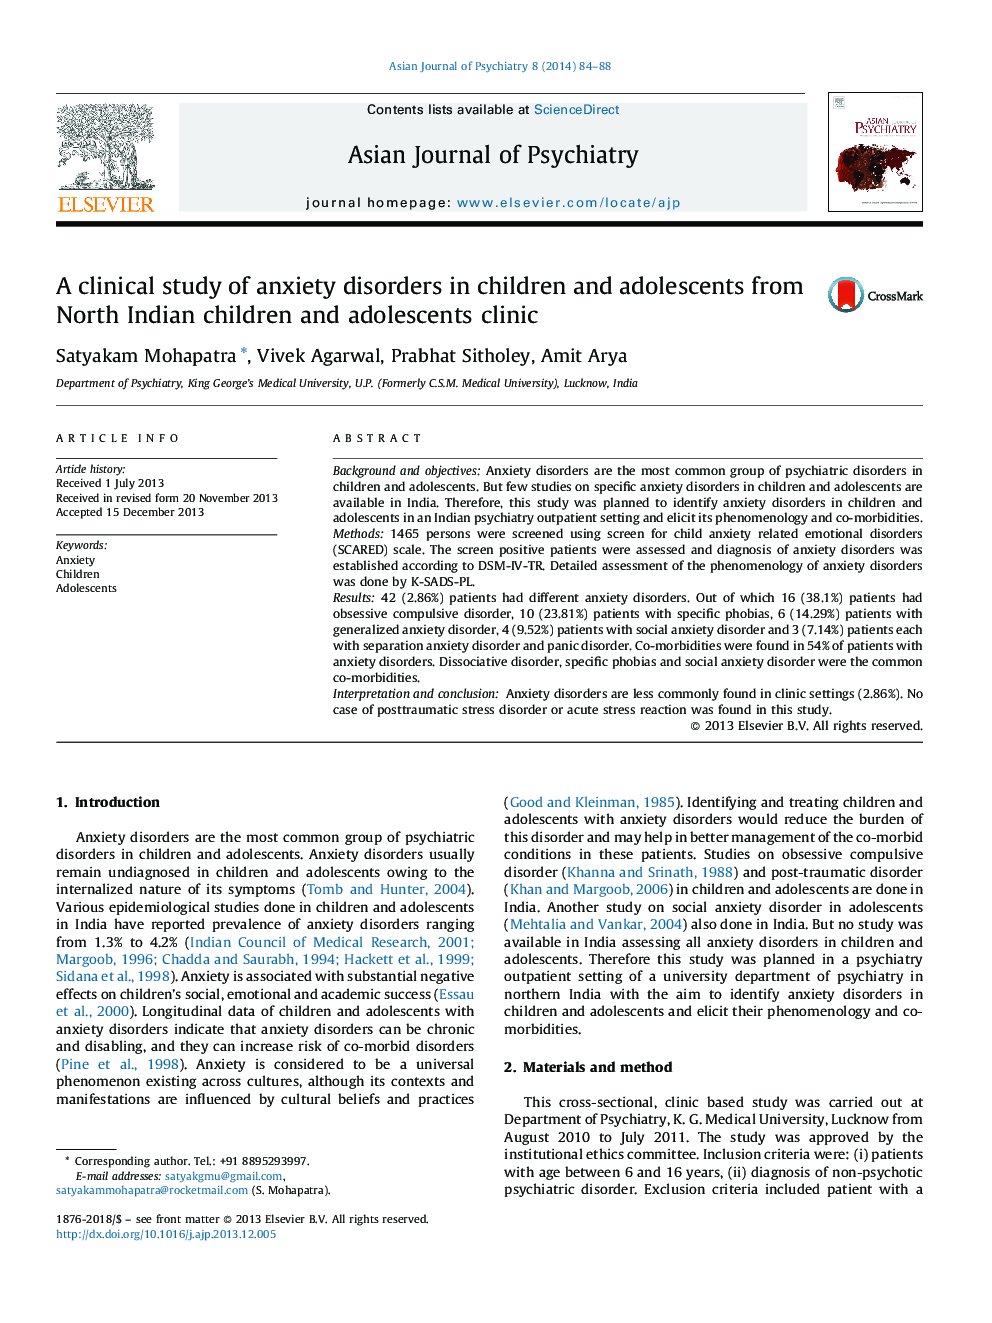 یک مطالعه بالینی اختلالات اضطرابی در کودکان و نوجوانان از کلینیک کودکان و نوجوانان شمال هندی 